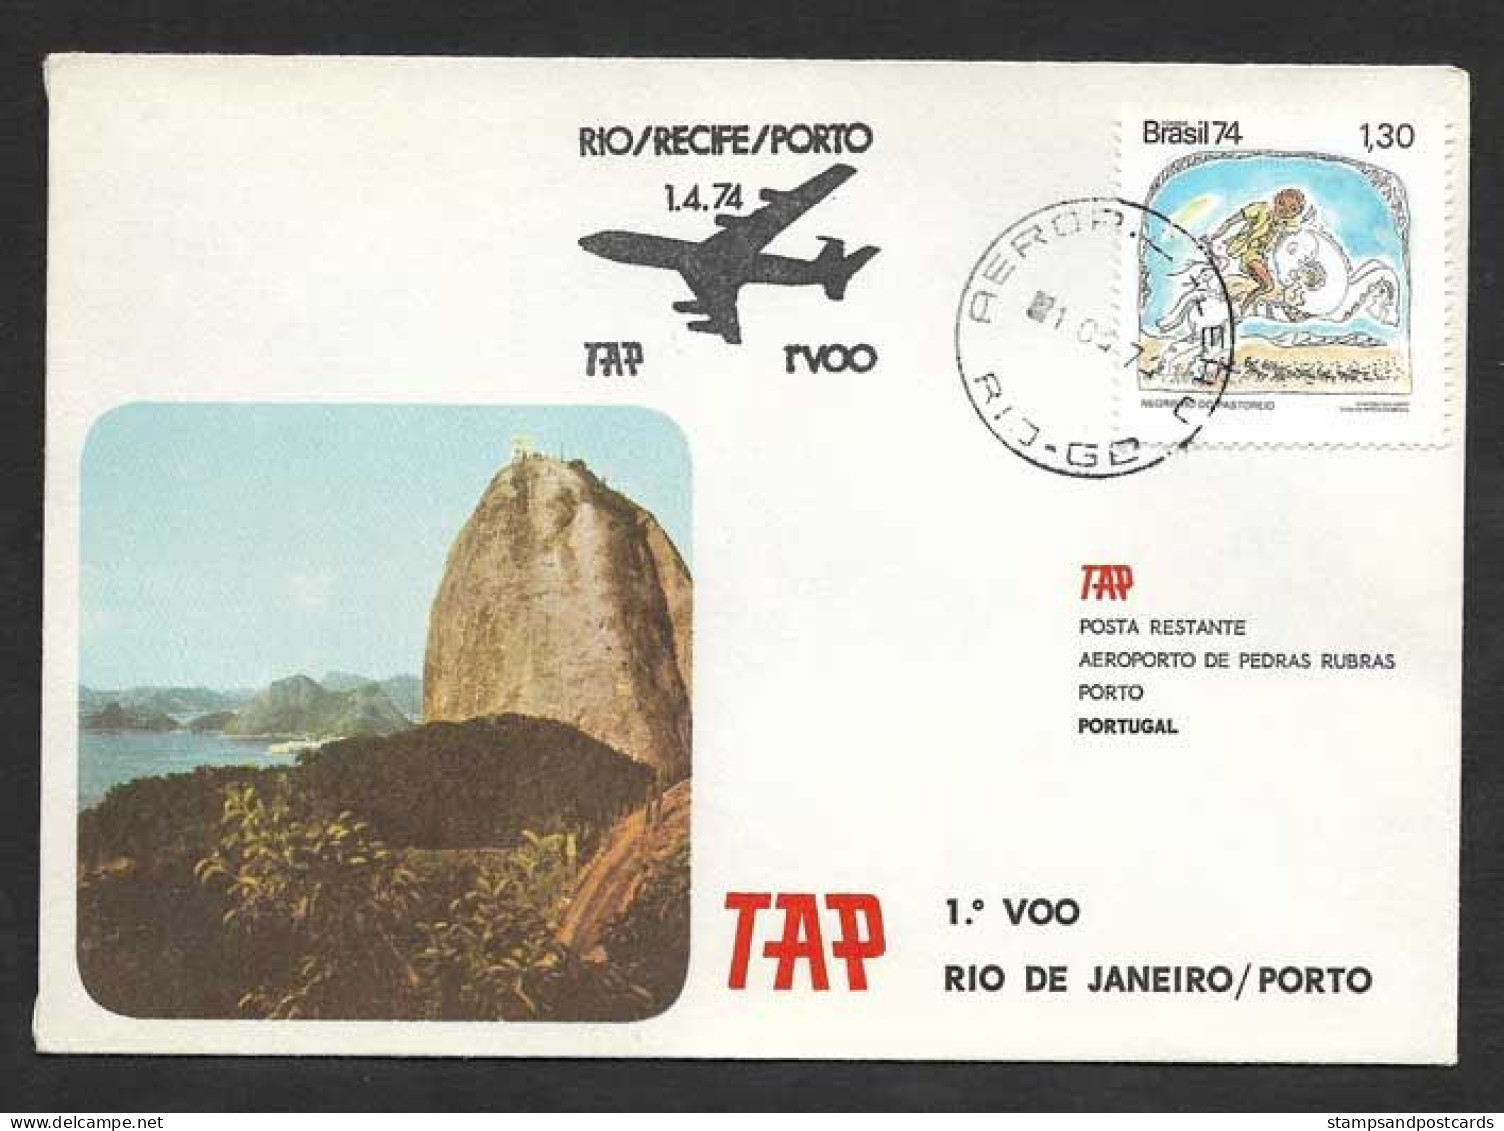 Brèsil Brasil Brazil Portugal Premier Vol TAP Rio Porto 1974 First Flight Rio De Janeiro Oporto - Luchtpost